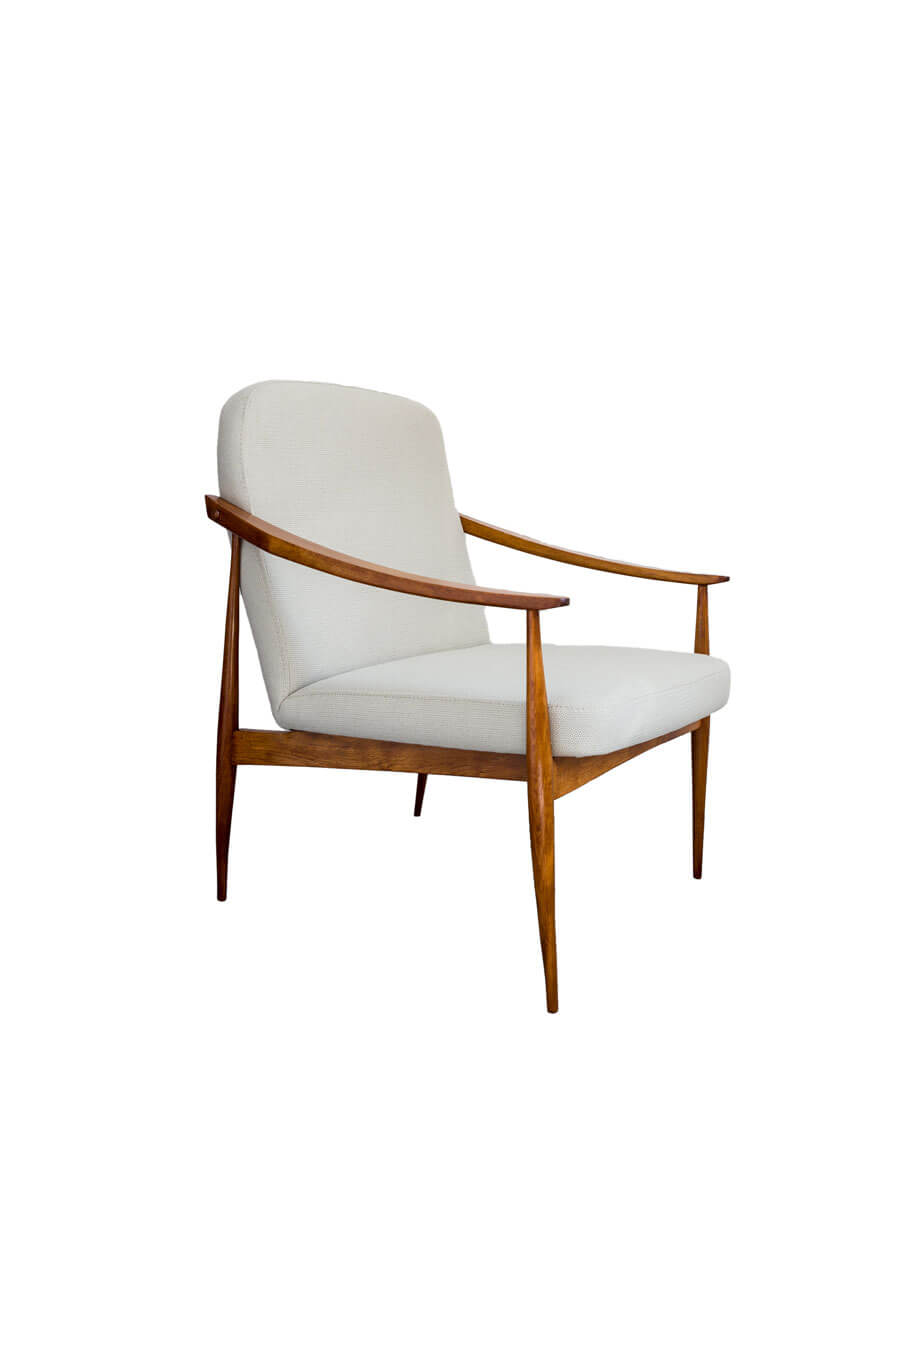 Mid century modern armchair from Czechoslovakia, 1960's